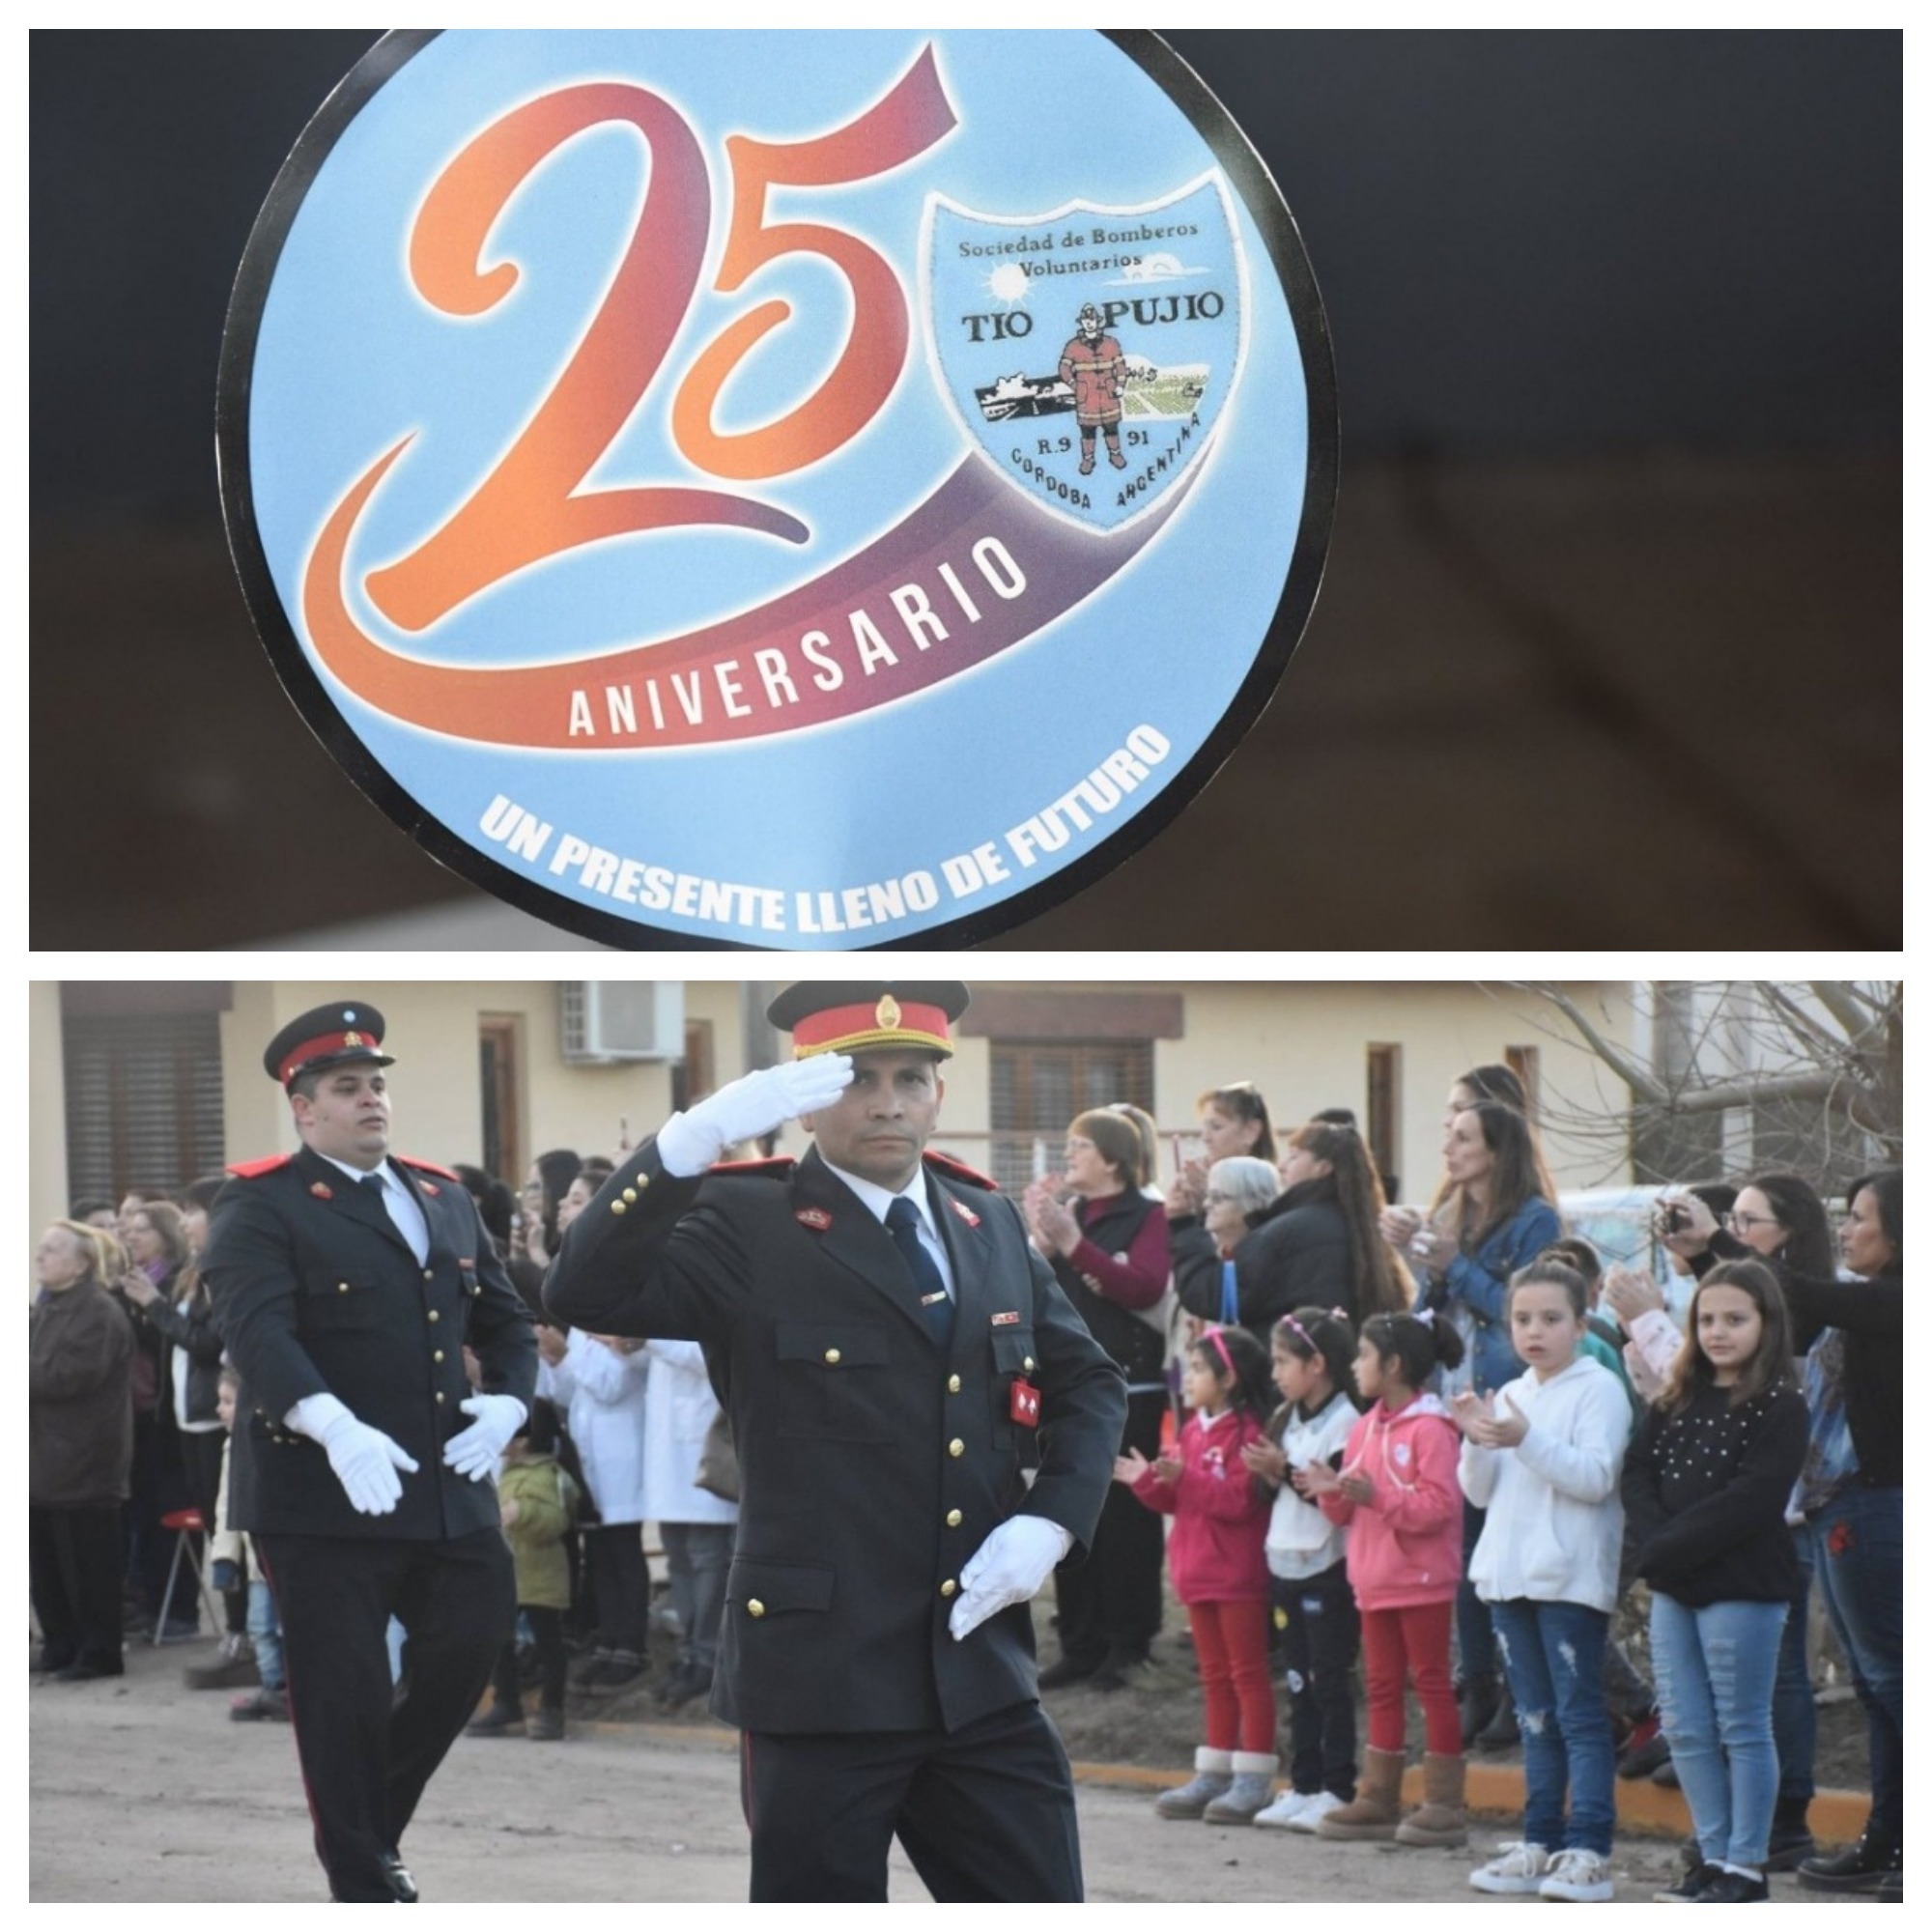 25° Aniversario de la Sociedad de Bomberos Voluntarios de Tío Pujio